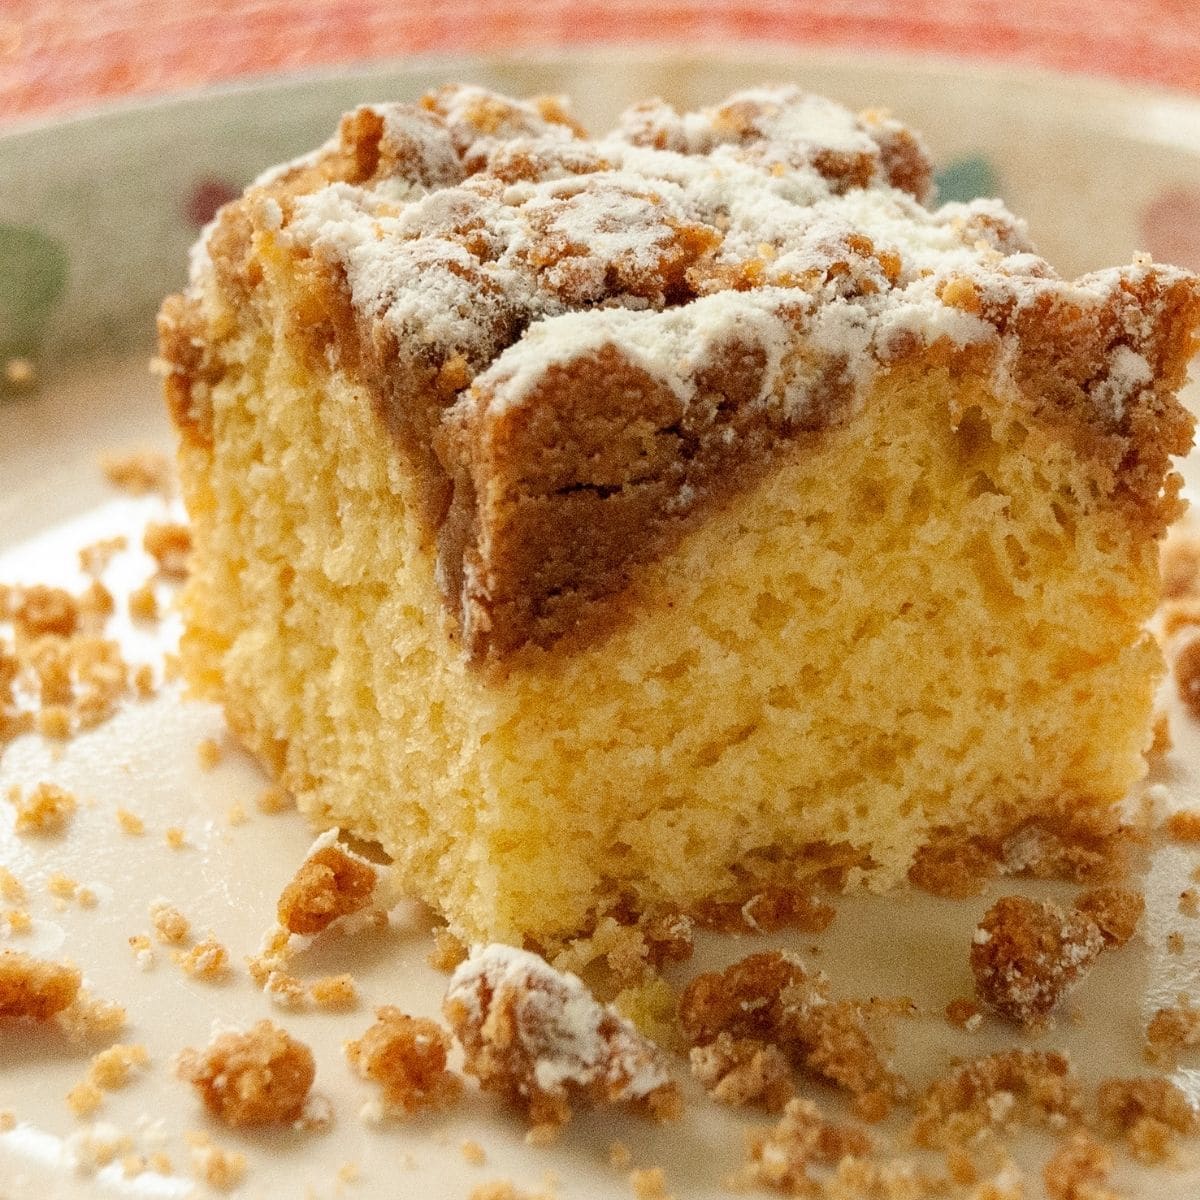 Cömert bir dilim Bisquick kahveli kek kırıntıları ile tabakta.